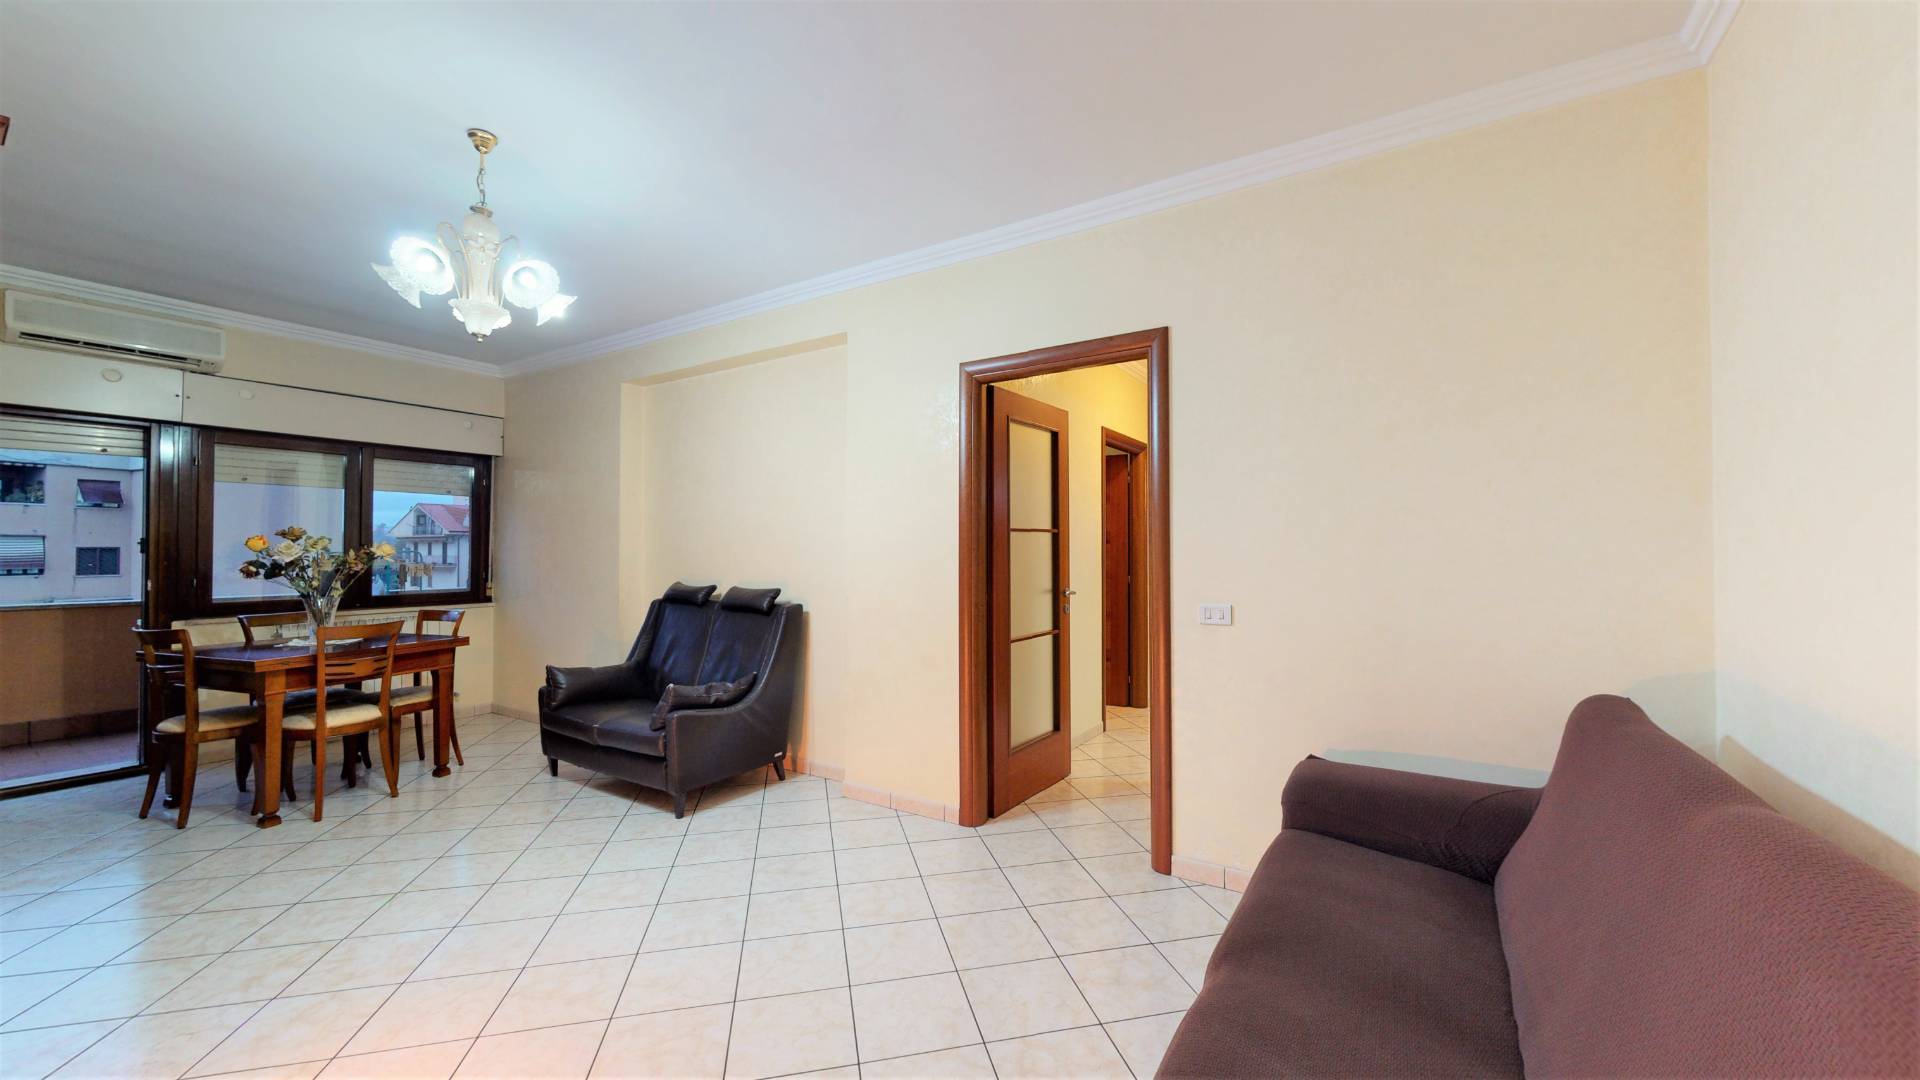 Appartamento in vendita a Guidonia Montecelio, 4 locali, zona Località: ColleFiorito, prezzo € 169.000 | CambioCasa.it